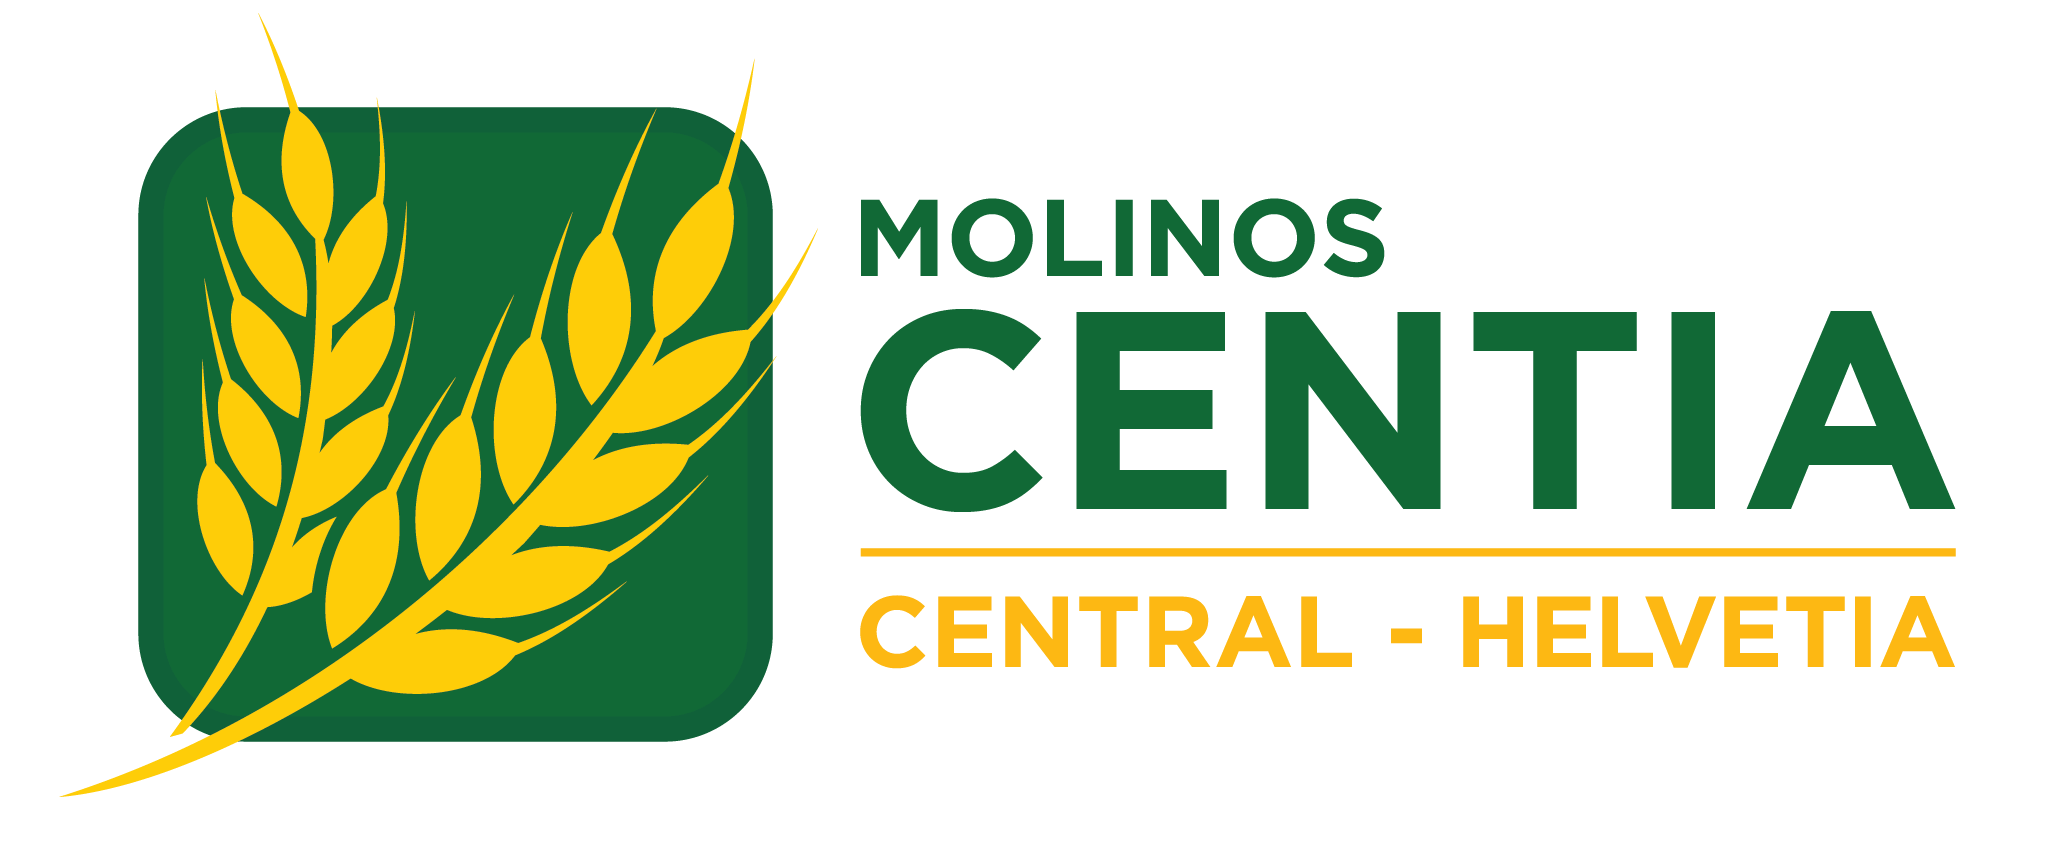 Molinos Central - Helvetia, S.A.